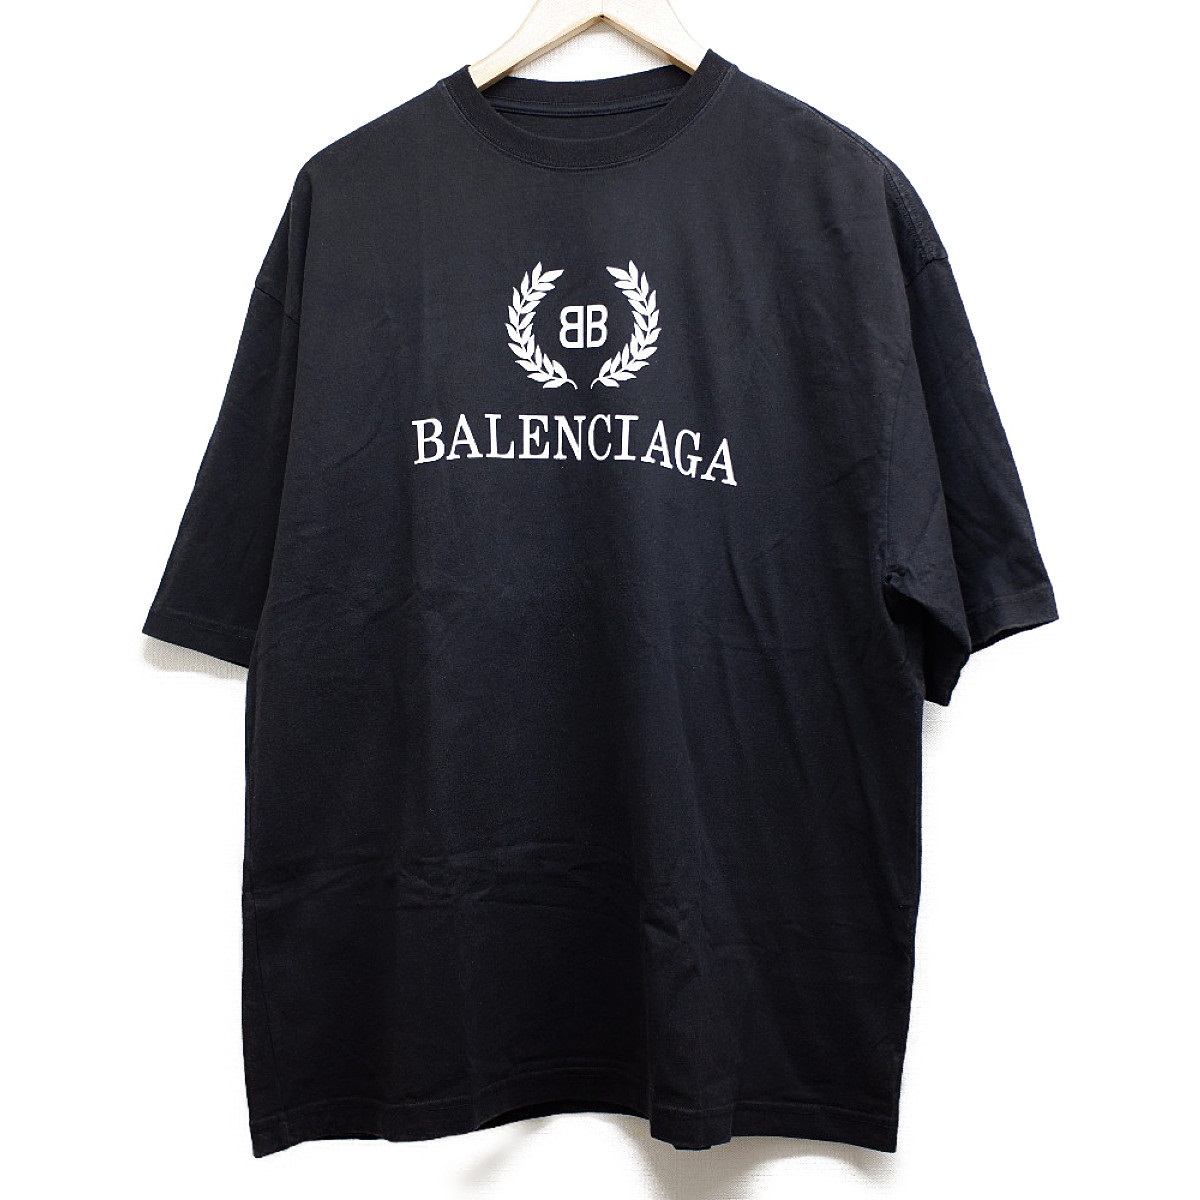 バレンシアガの556148 ロゴプリント クルーネック半袖Tシャツの買取実績です。